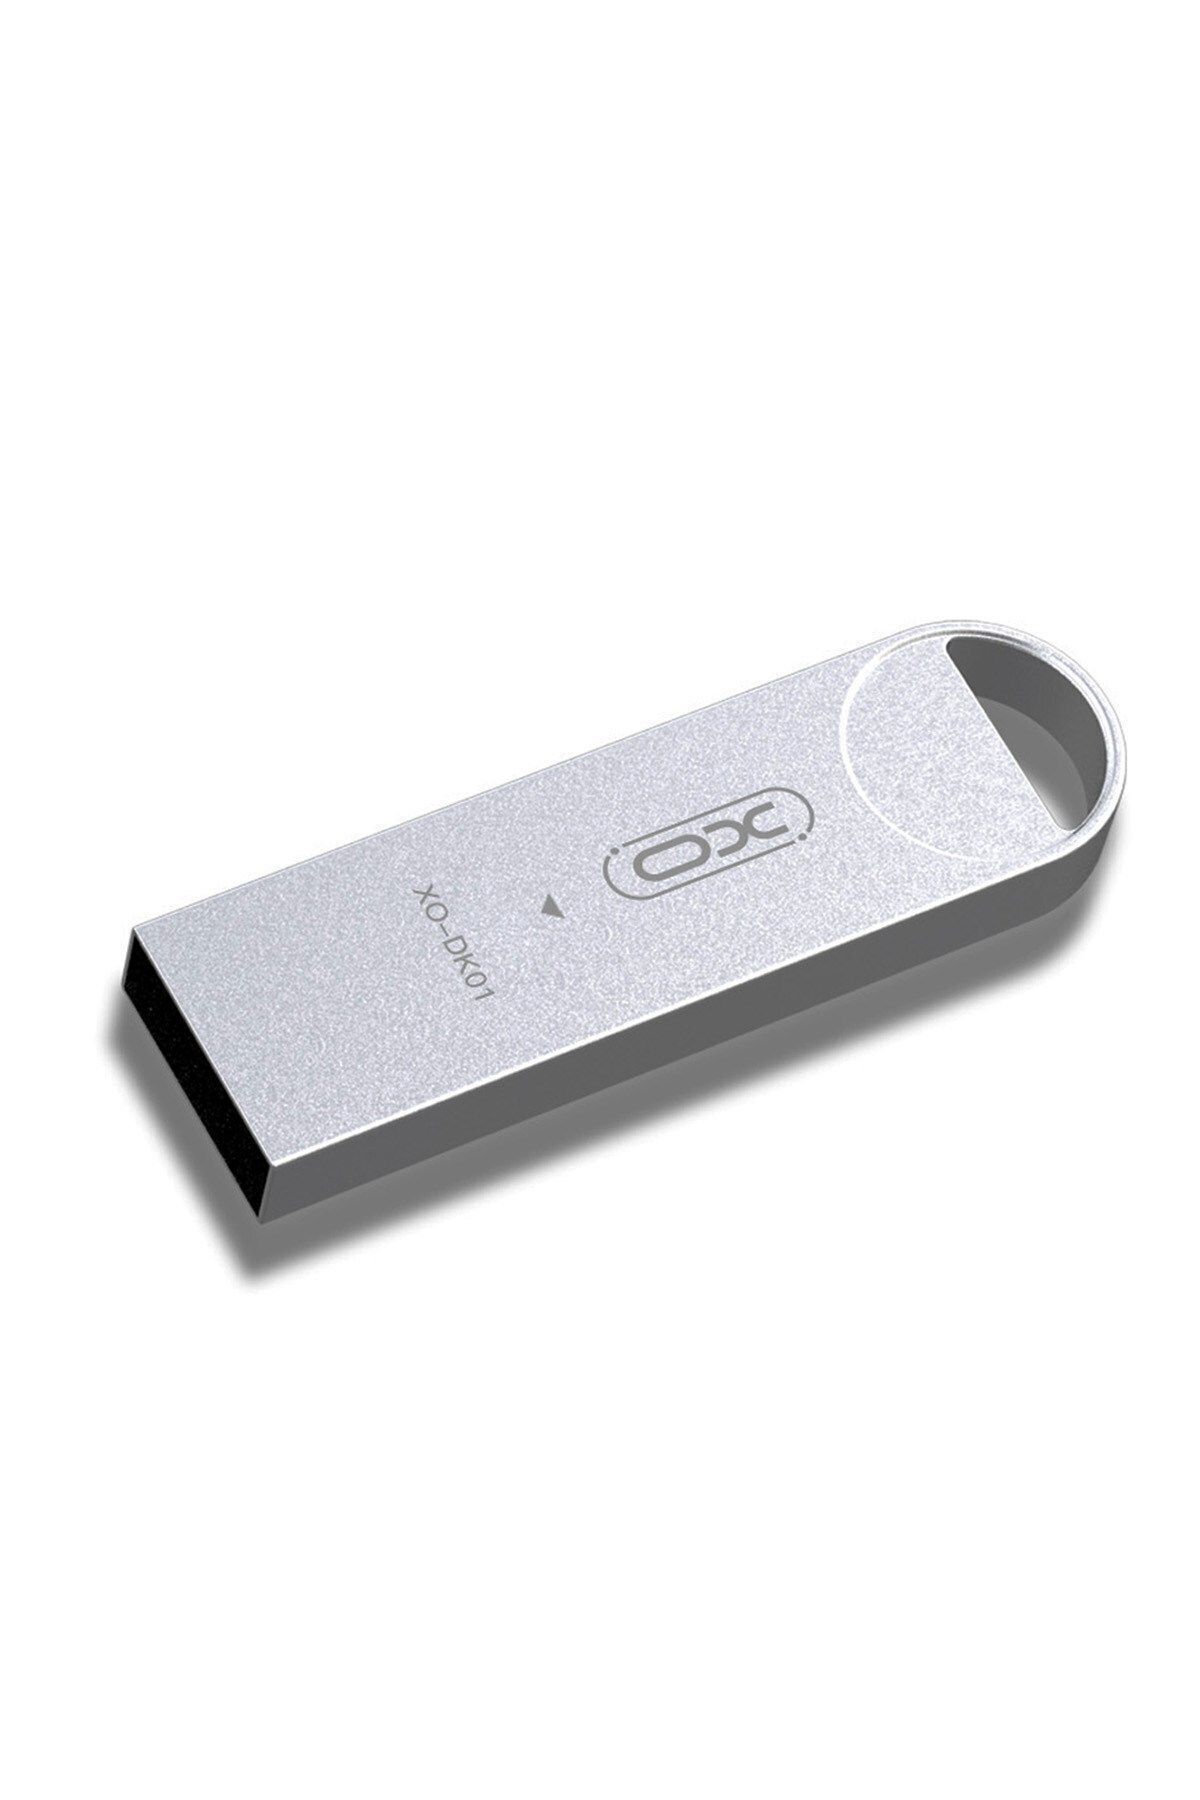 Xo -DK01 16 GB Metal Gövdeli Koruyucu Tasarım USB Bellek Flash Disk